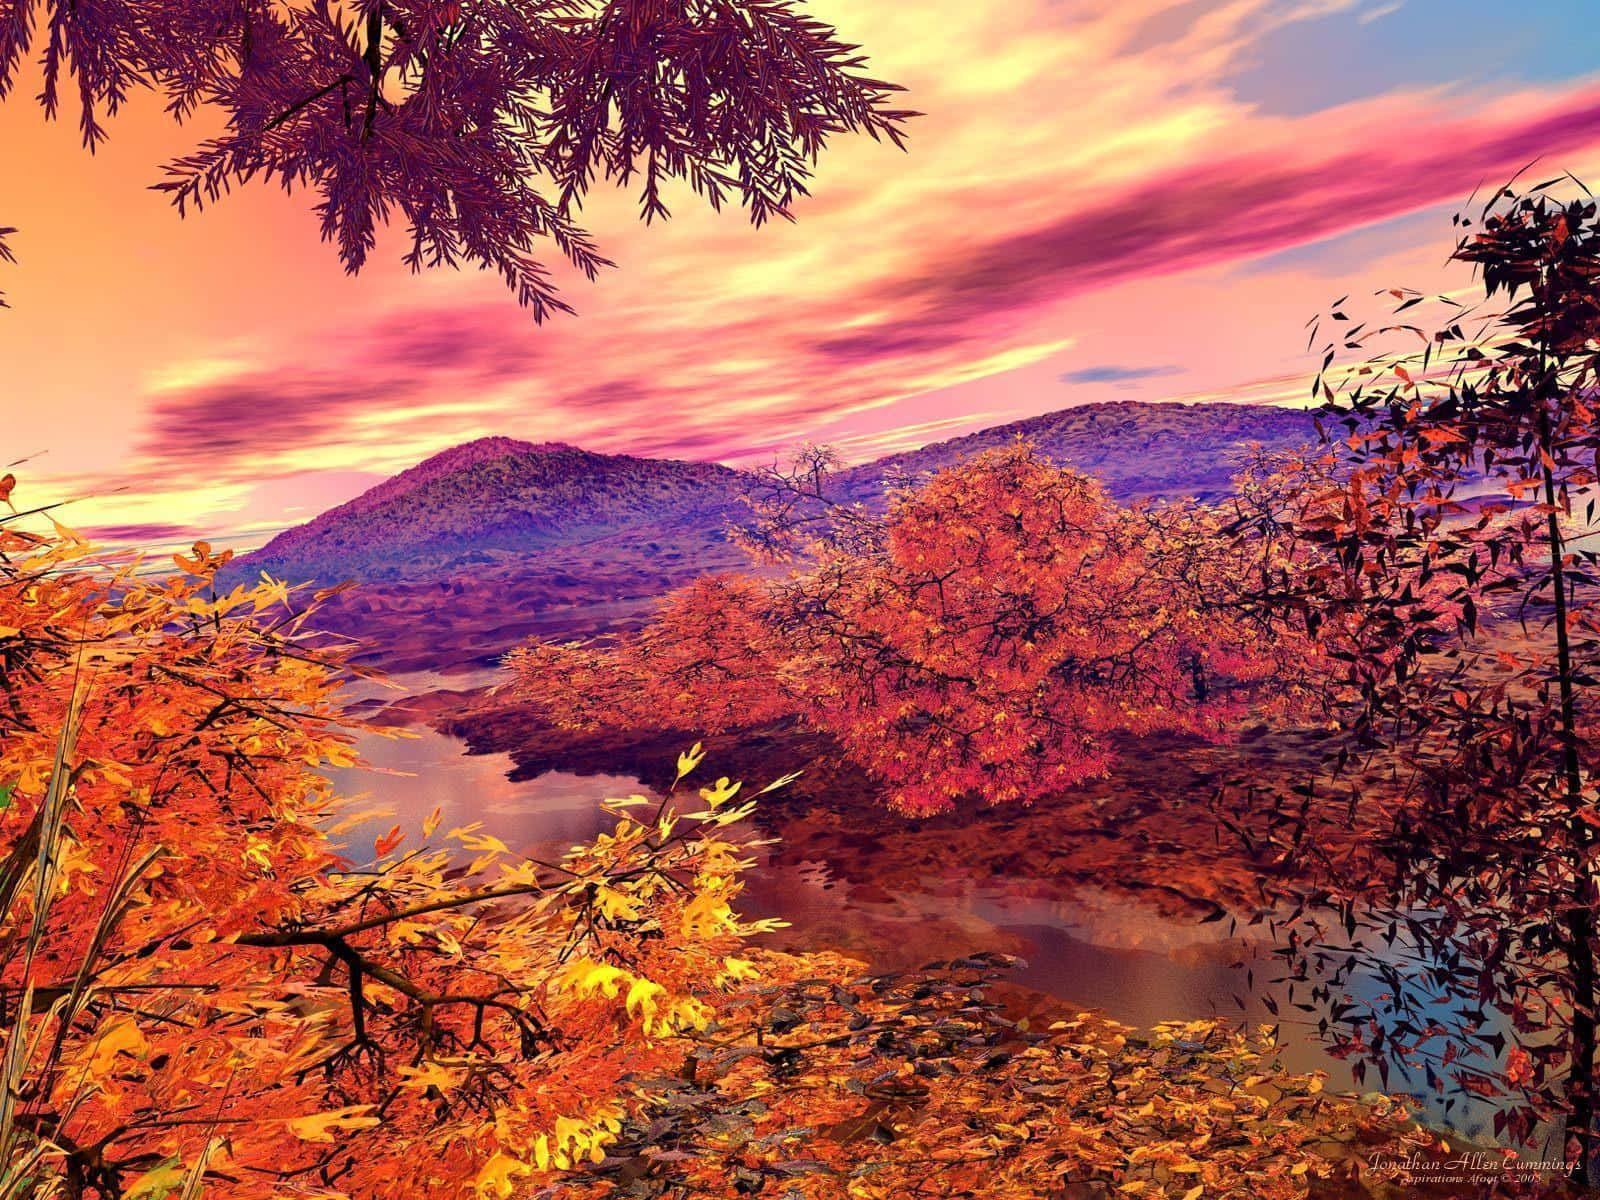 Udnyt efteråret sæsonen med en fredelig gåtur blandt de farverige faldne blade. Wallpaper